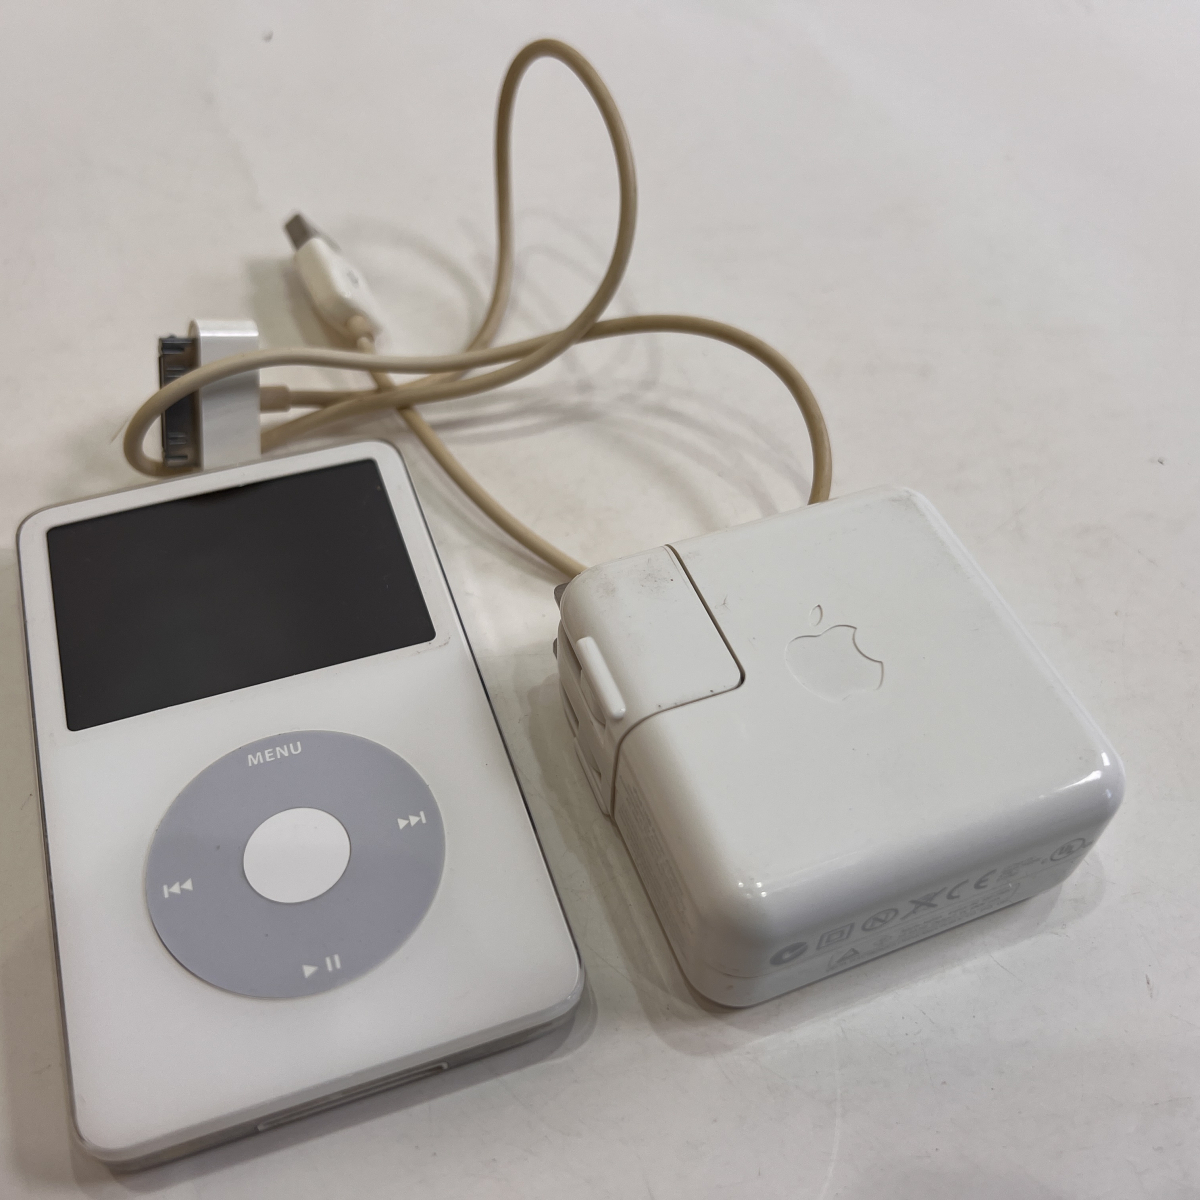 【送料無料】Apple iPod classic A1136 (第5世代) 30GB ホワイト コンセント・接続ケーブル付 通電確認済 の画像1